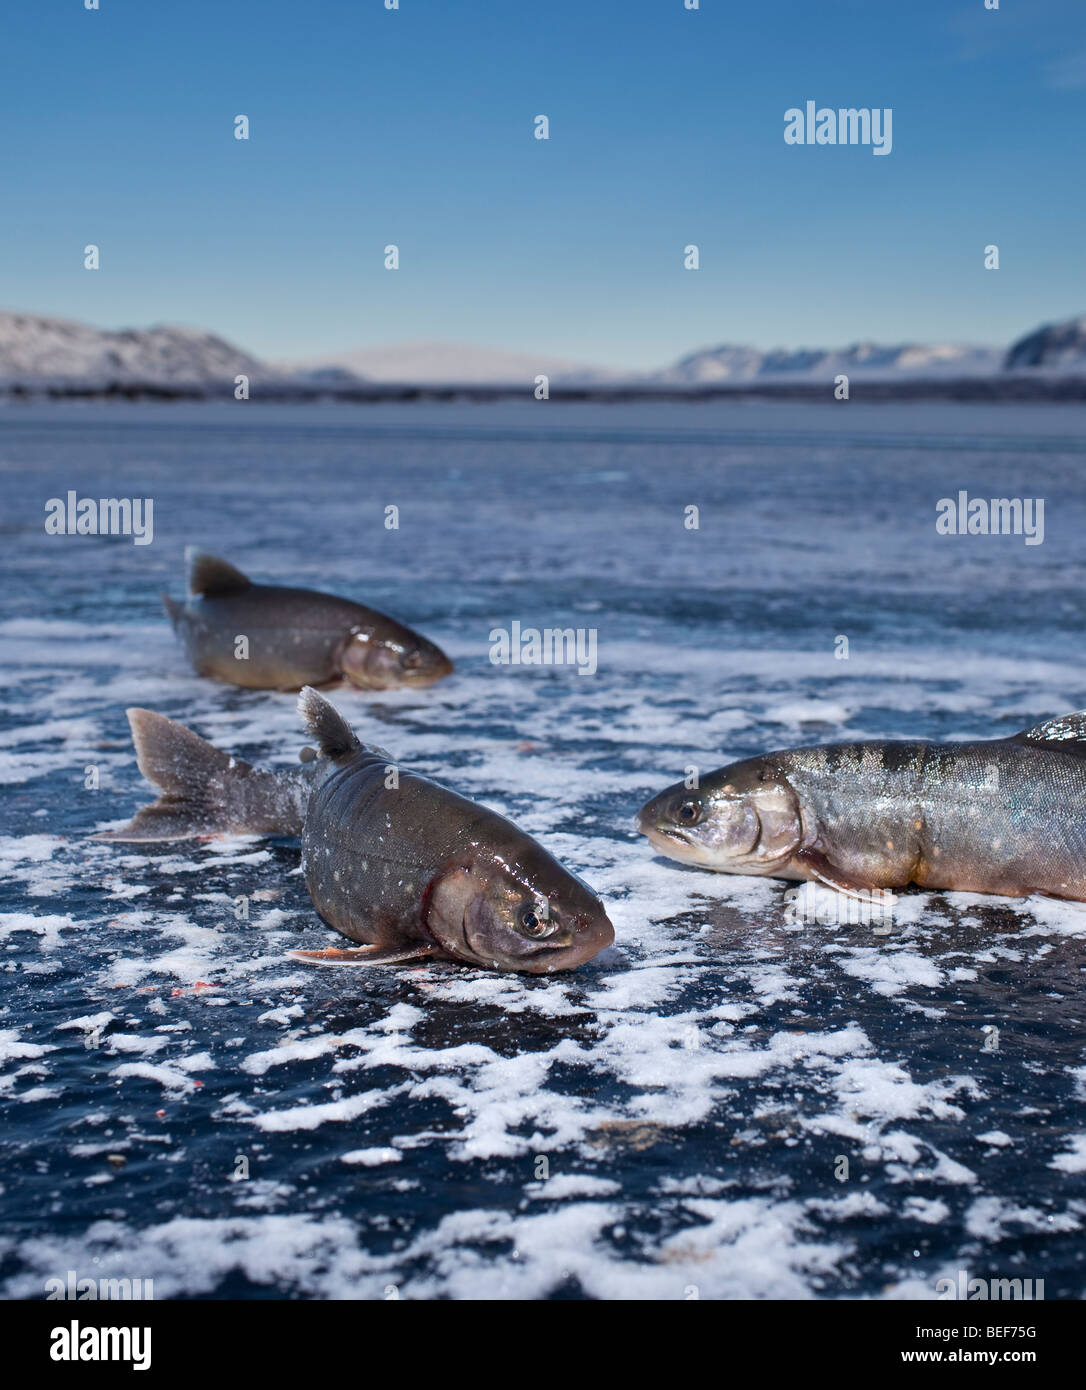 Arctic trout, Ice fishing on Lake Thingvellir, Iceland Stock Photo